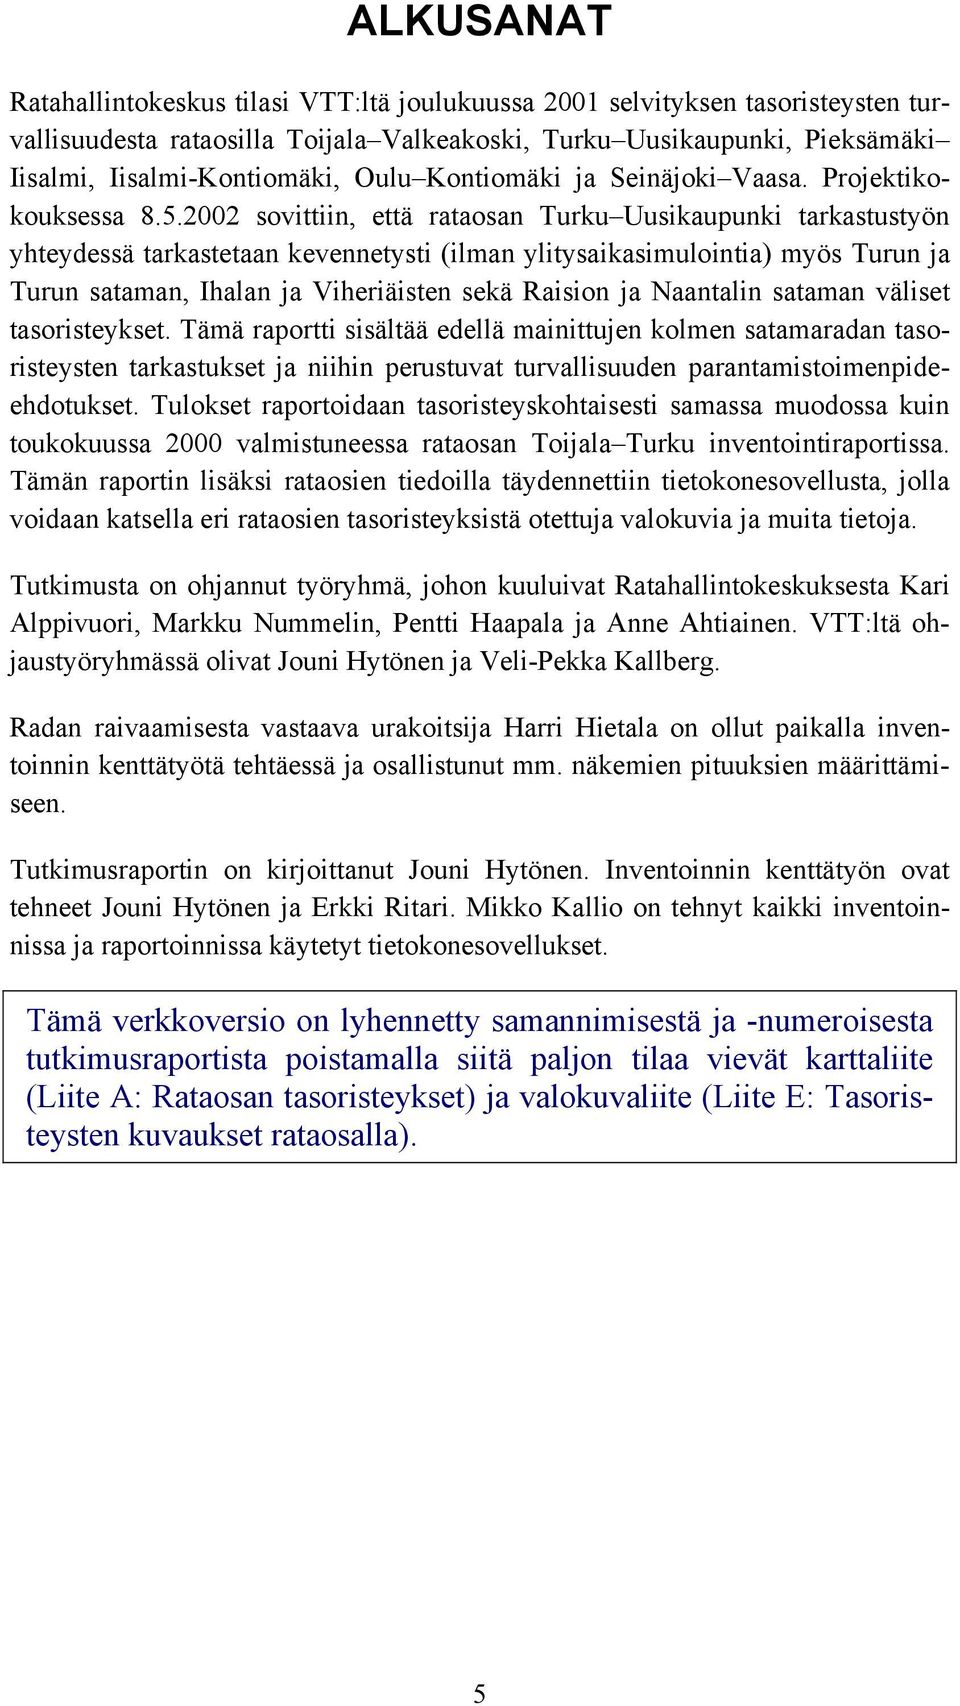 2002 sovittiin, että rataosan Turku Uusikaupunki tarkastustyön yhteydessä tarkastetaan kevennetysti (ilman ylitysaikasimulointia) myös Turun ja Turun sataman, Ihalan ja Viheriäisten sekä Raision ja